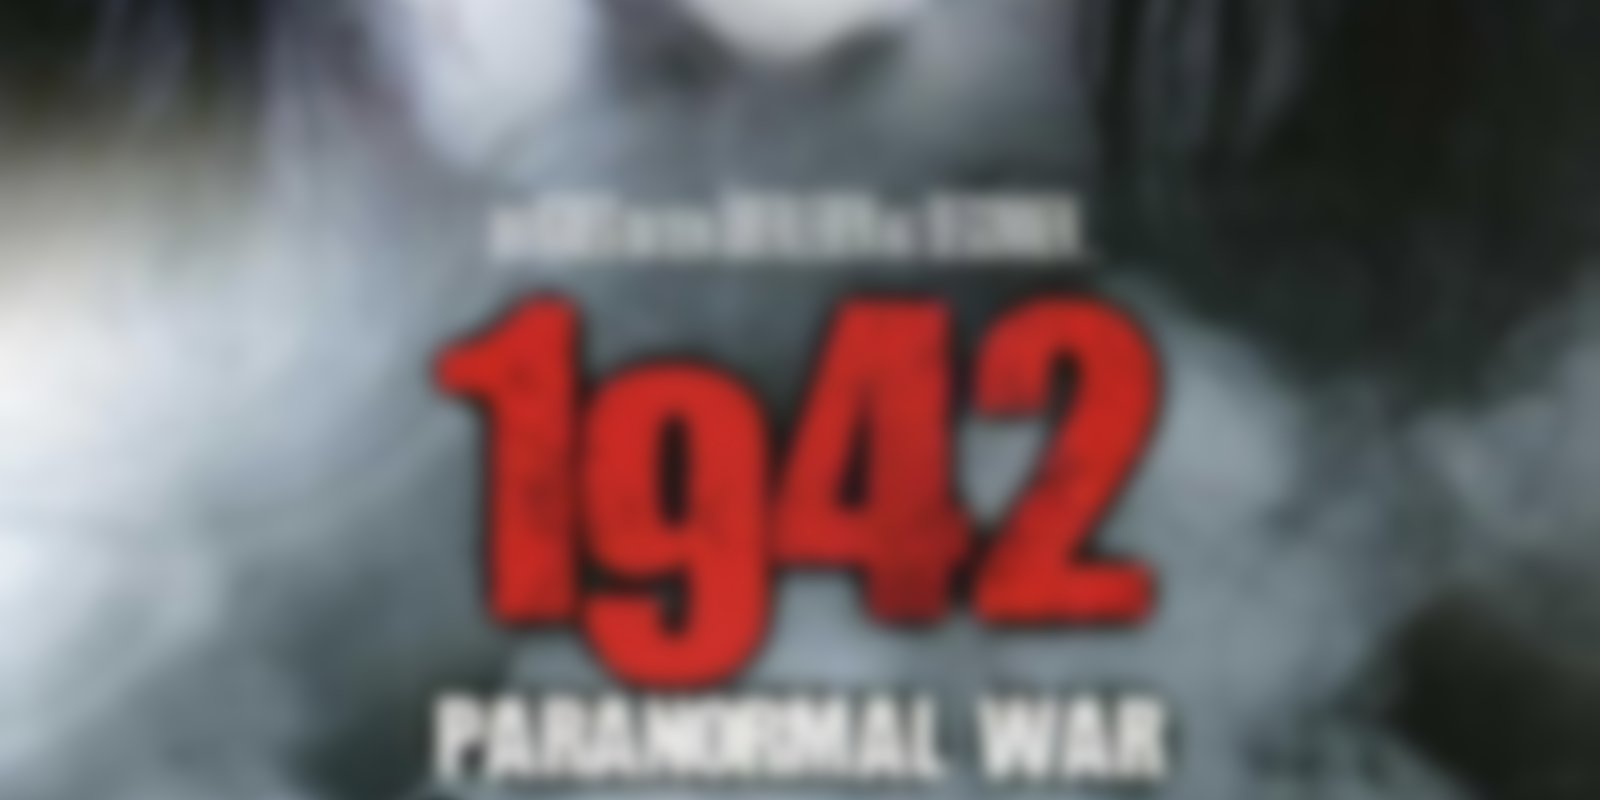 1942 - Paranormal War